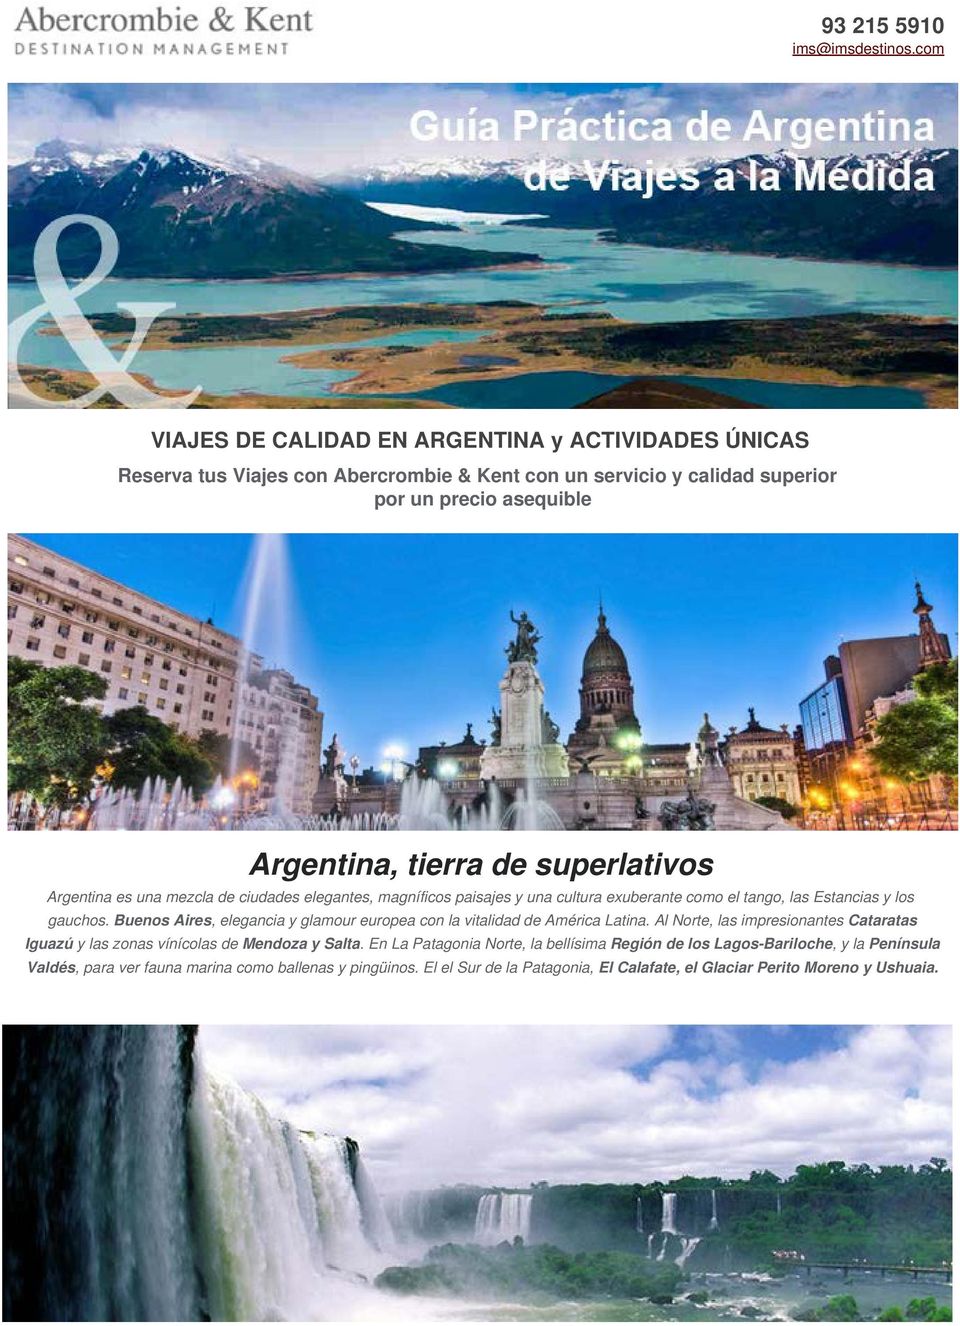 superlativos Argentina es una mezcla de ciudades elegantes, magníficos paisajes y una cultura exuberante como el tango, las Estancias y los gauchos.